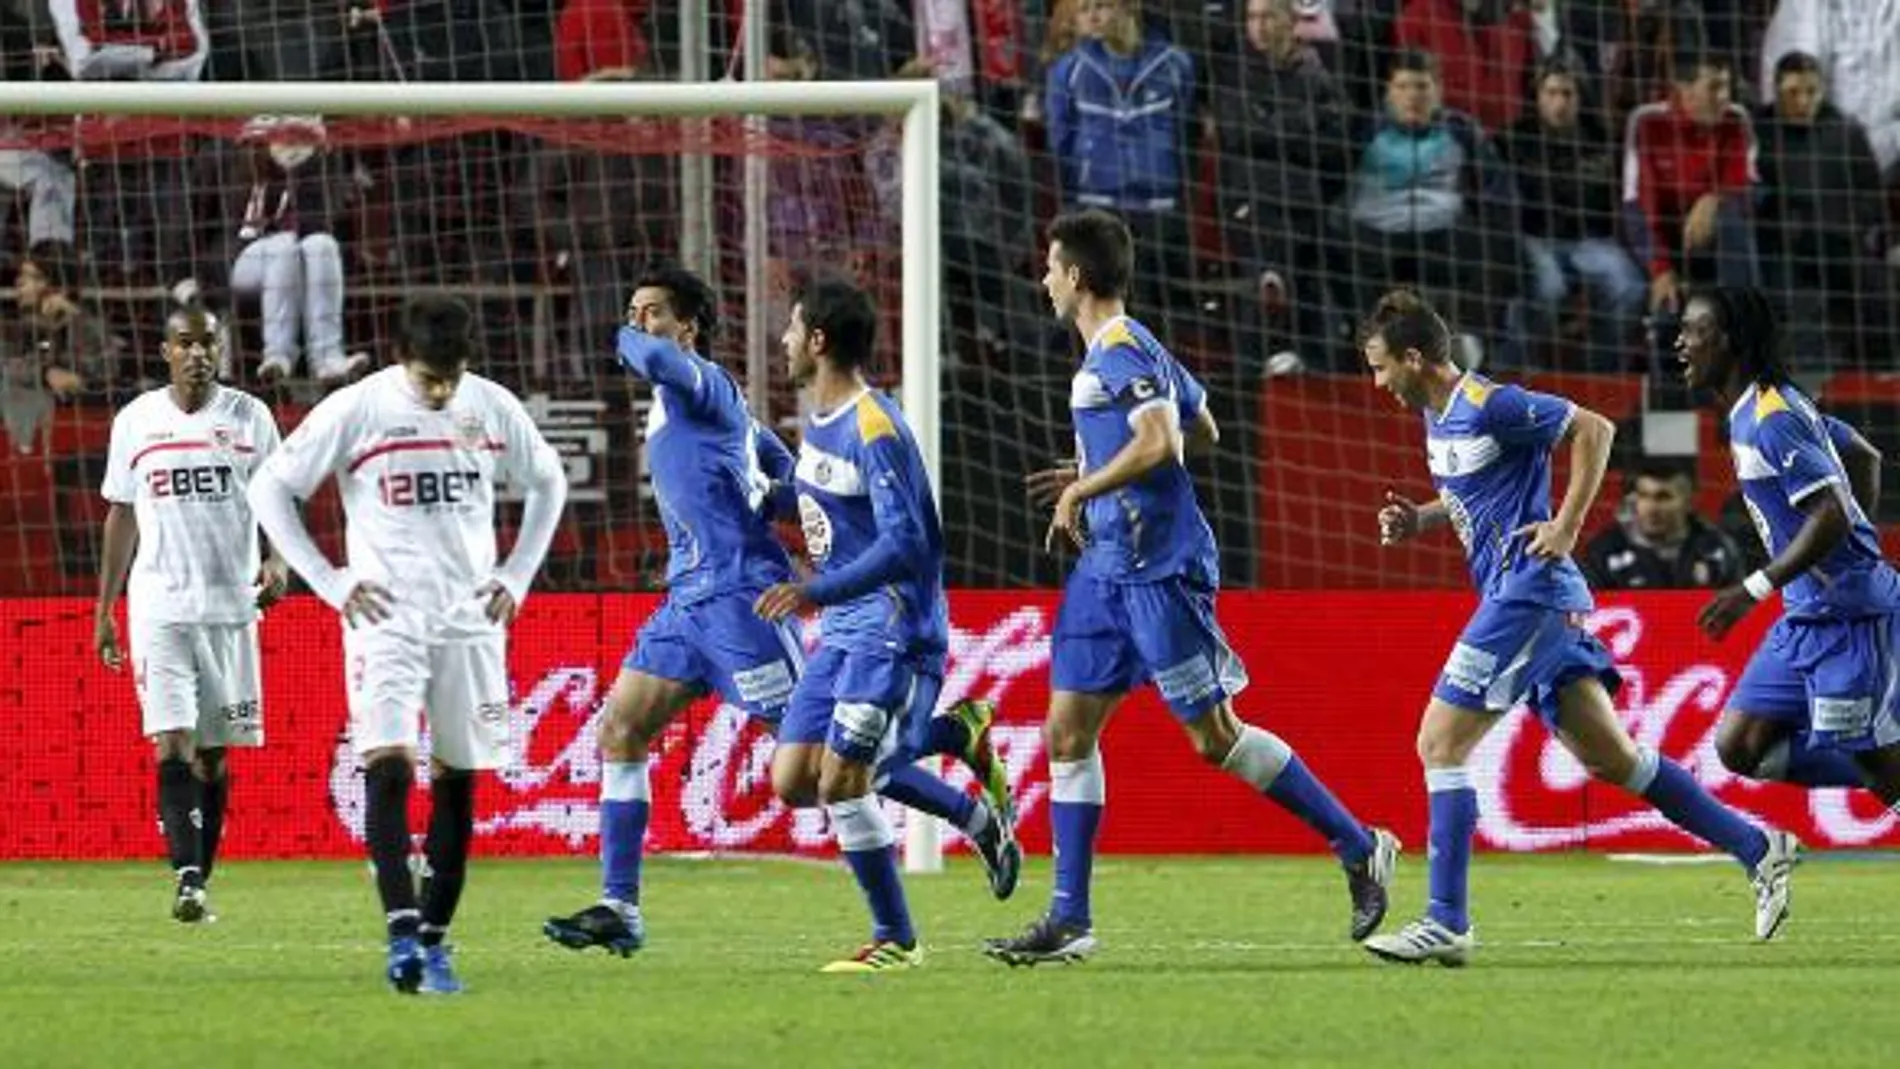 Los jugadores del Getafe celebran la consecución del tercer gol de su equipo frente al Sevilla, obra del centrocampista Pedro Ríos